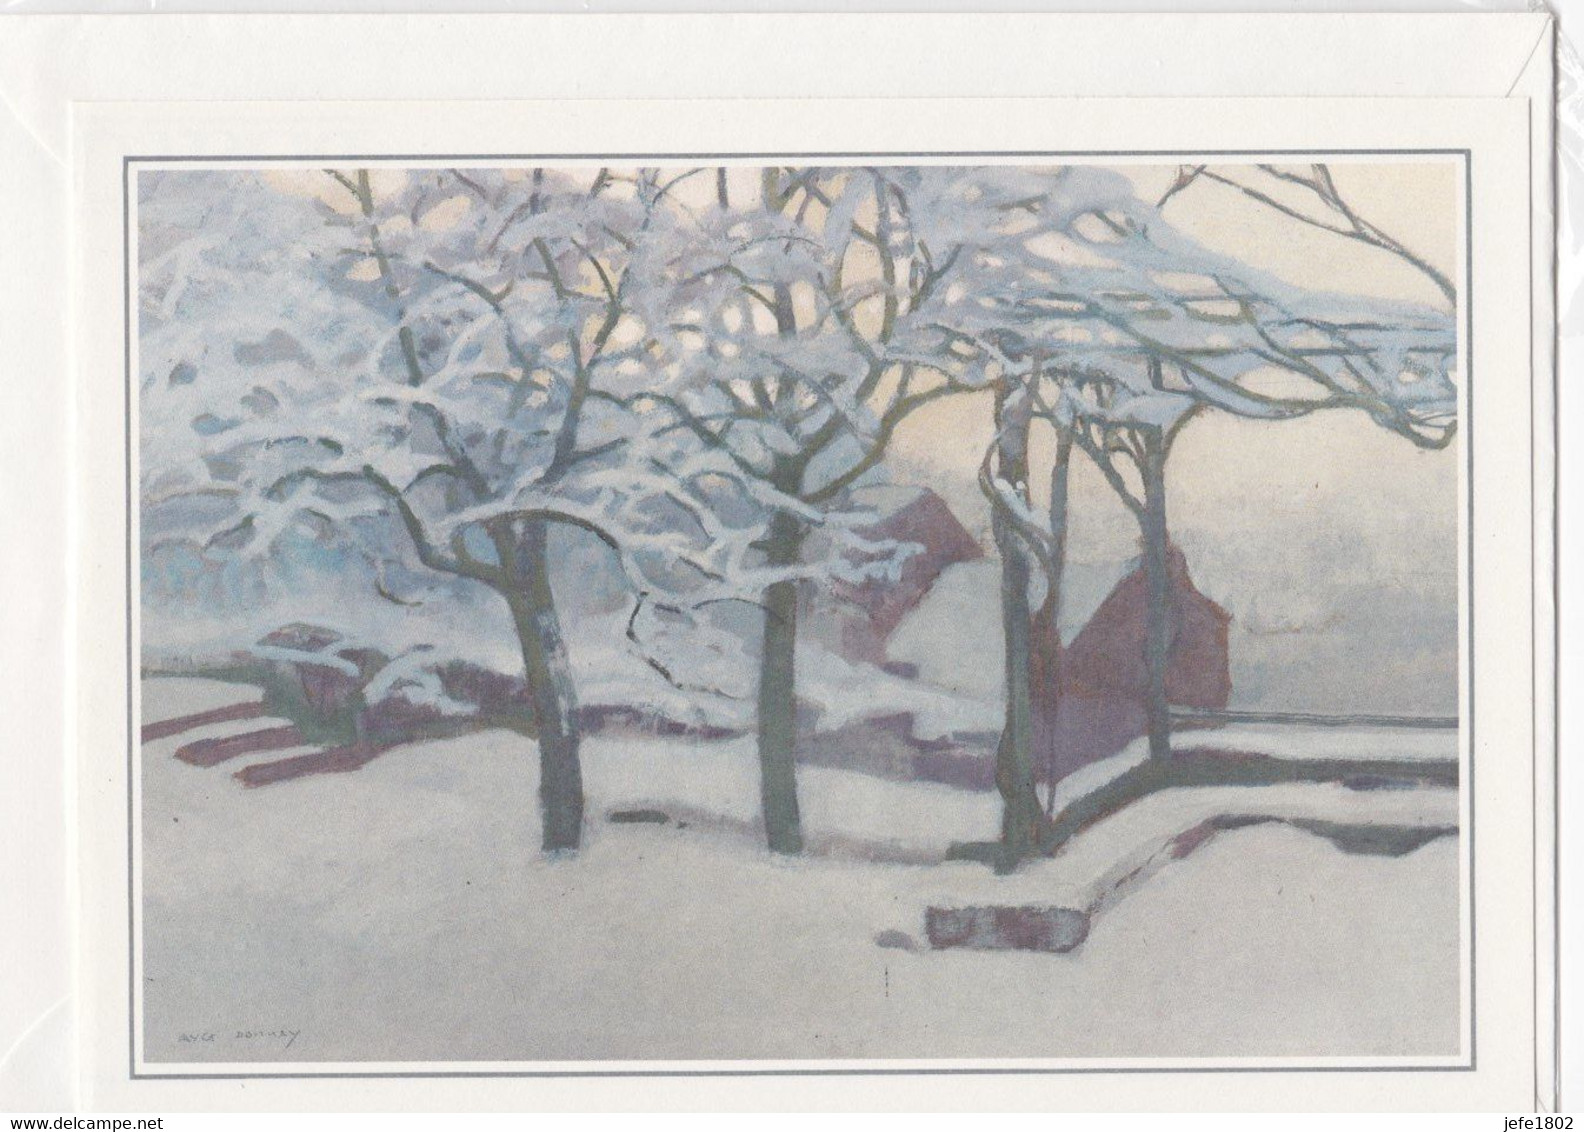 Postogram 013 / 84 - Tuin In De Sneeuw - A. Donny - Snow In The Garden - Postogram